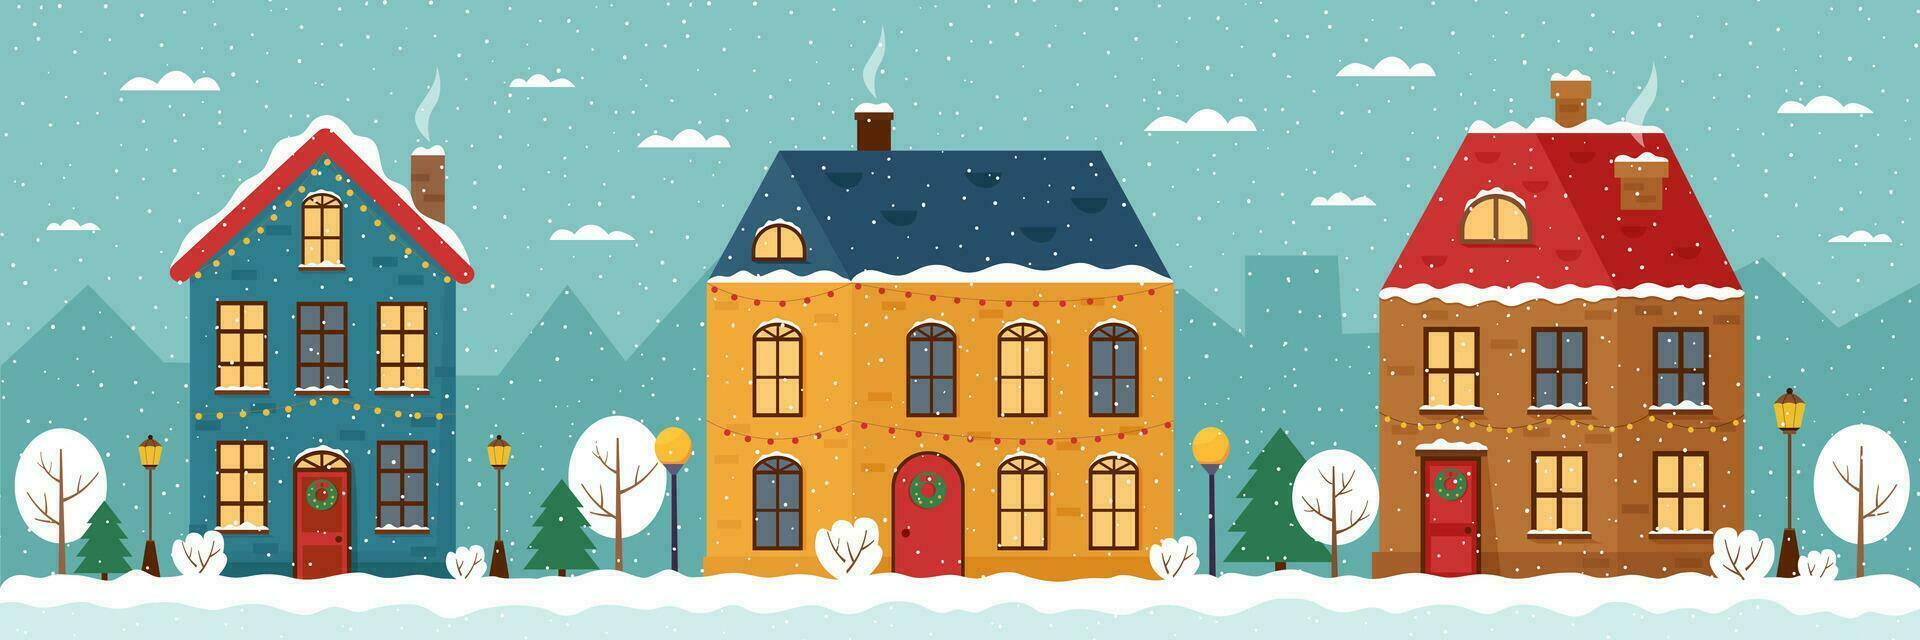 ilustração de casa de inverno vetor